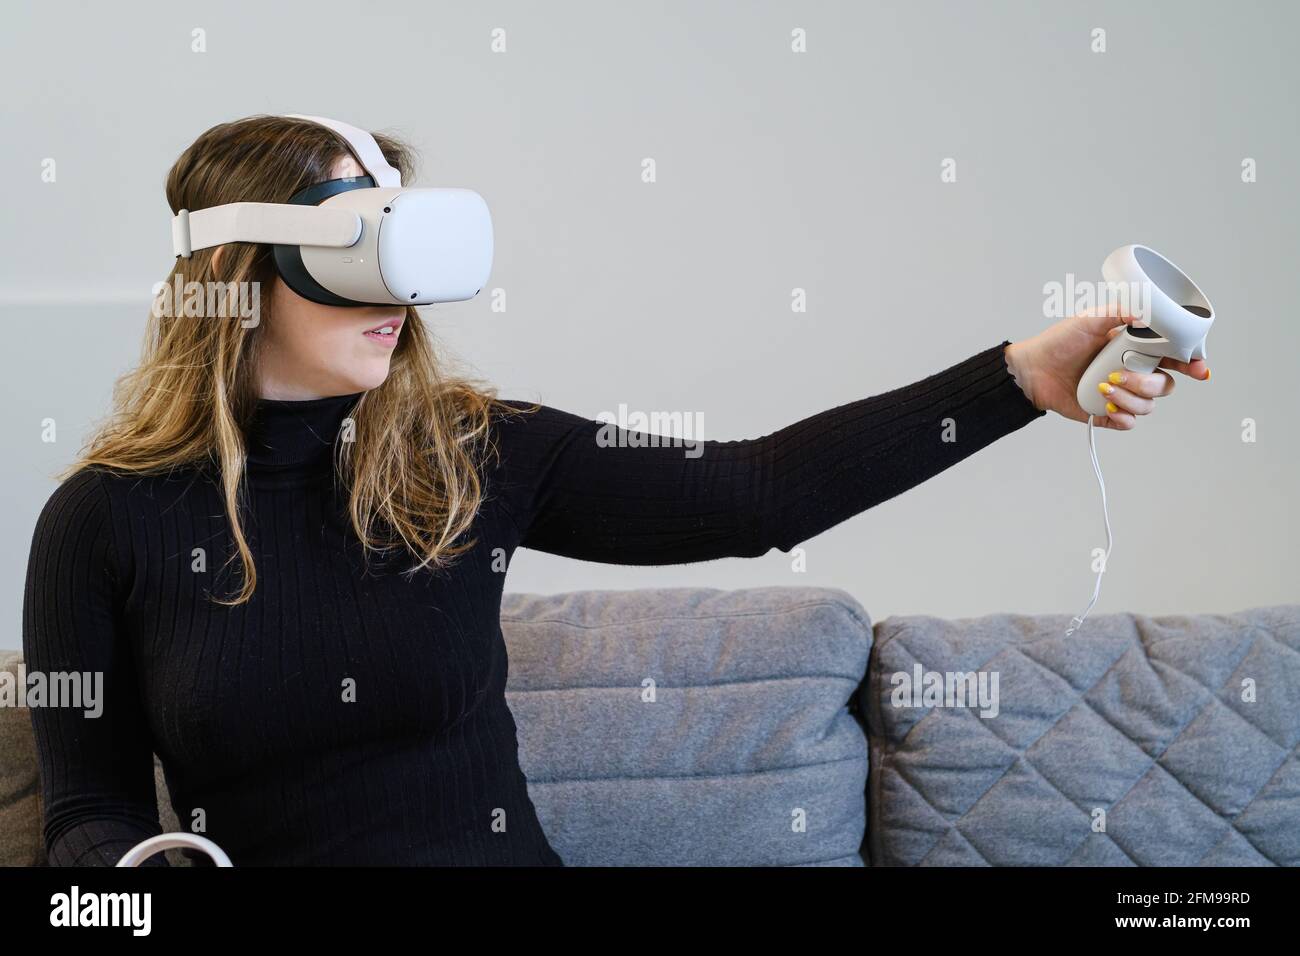 AN, BELGIQUE - 20 avril 2021 : une jeune femme essaie la quête 2 d'Oculus pour une expérience virtuelle. Assis dans un canapé, avec un dessus noir. Banque D'Images